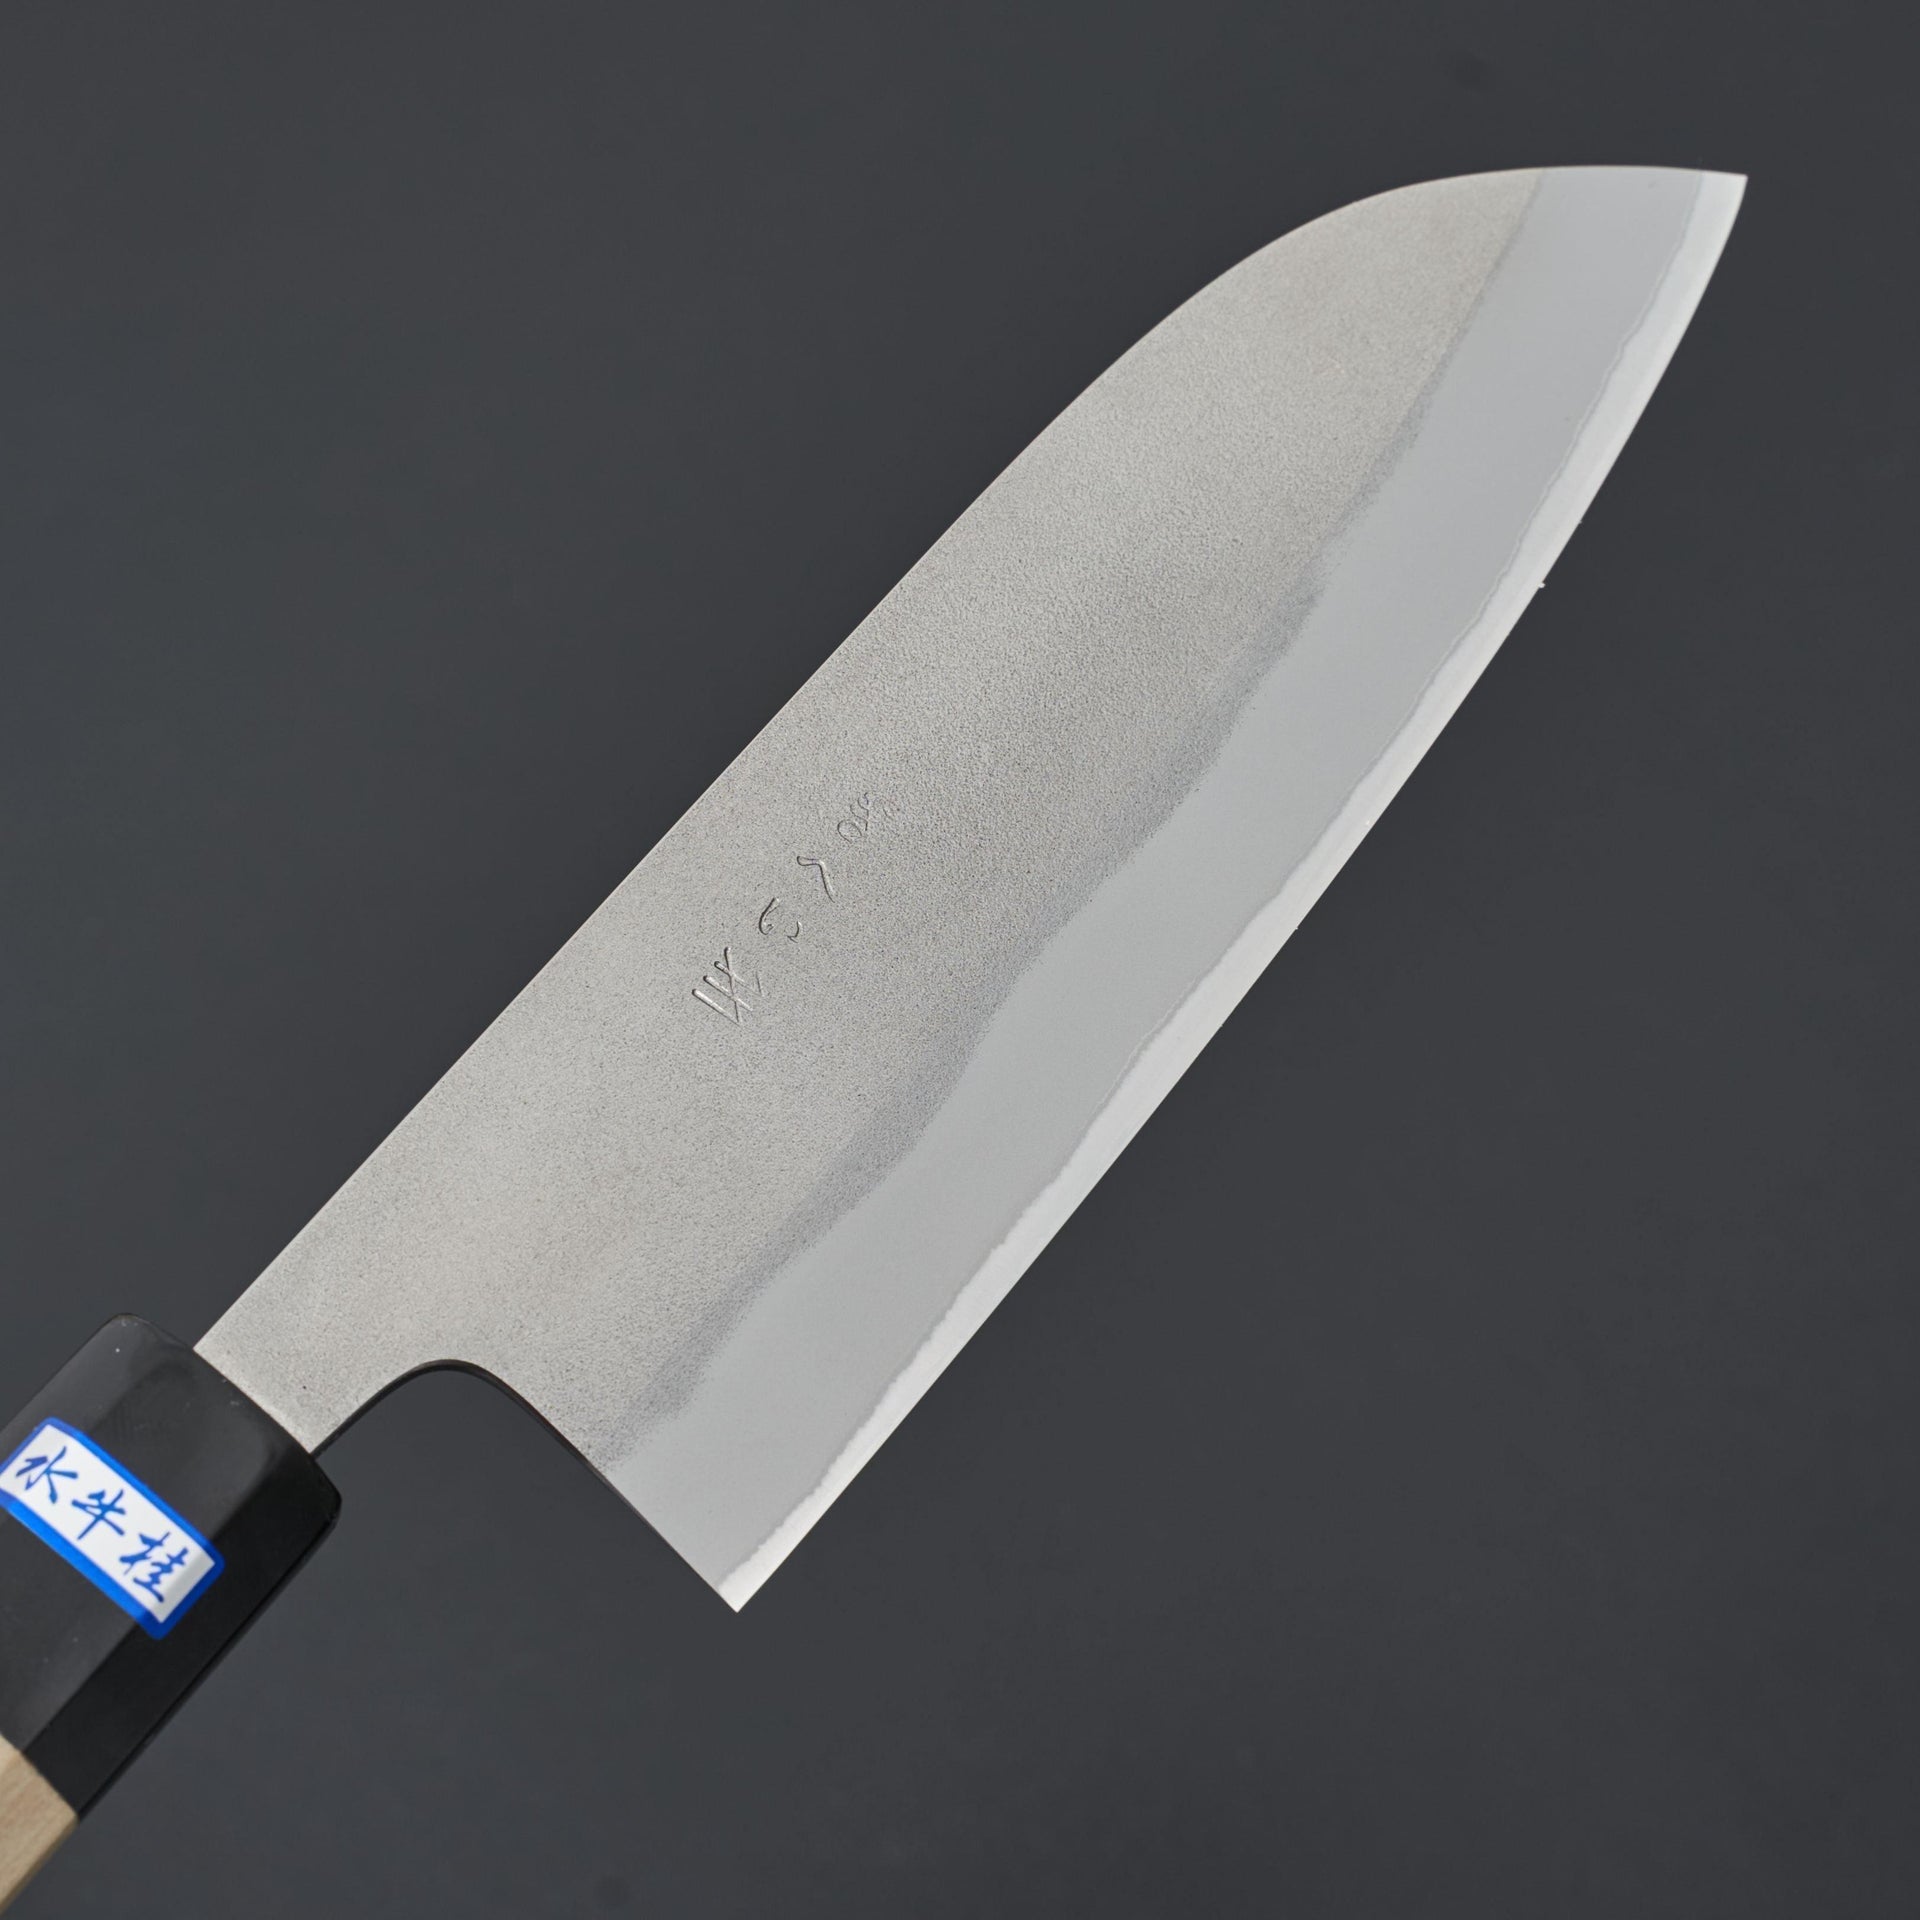 Gihei Nashiji Blue #2 Santoku 165mm-Knife-Gihei-Carbon Knife Co